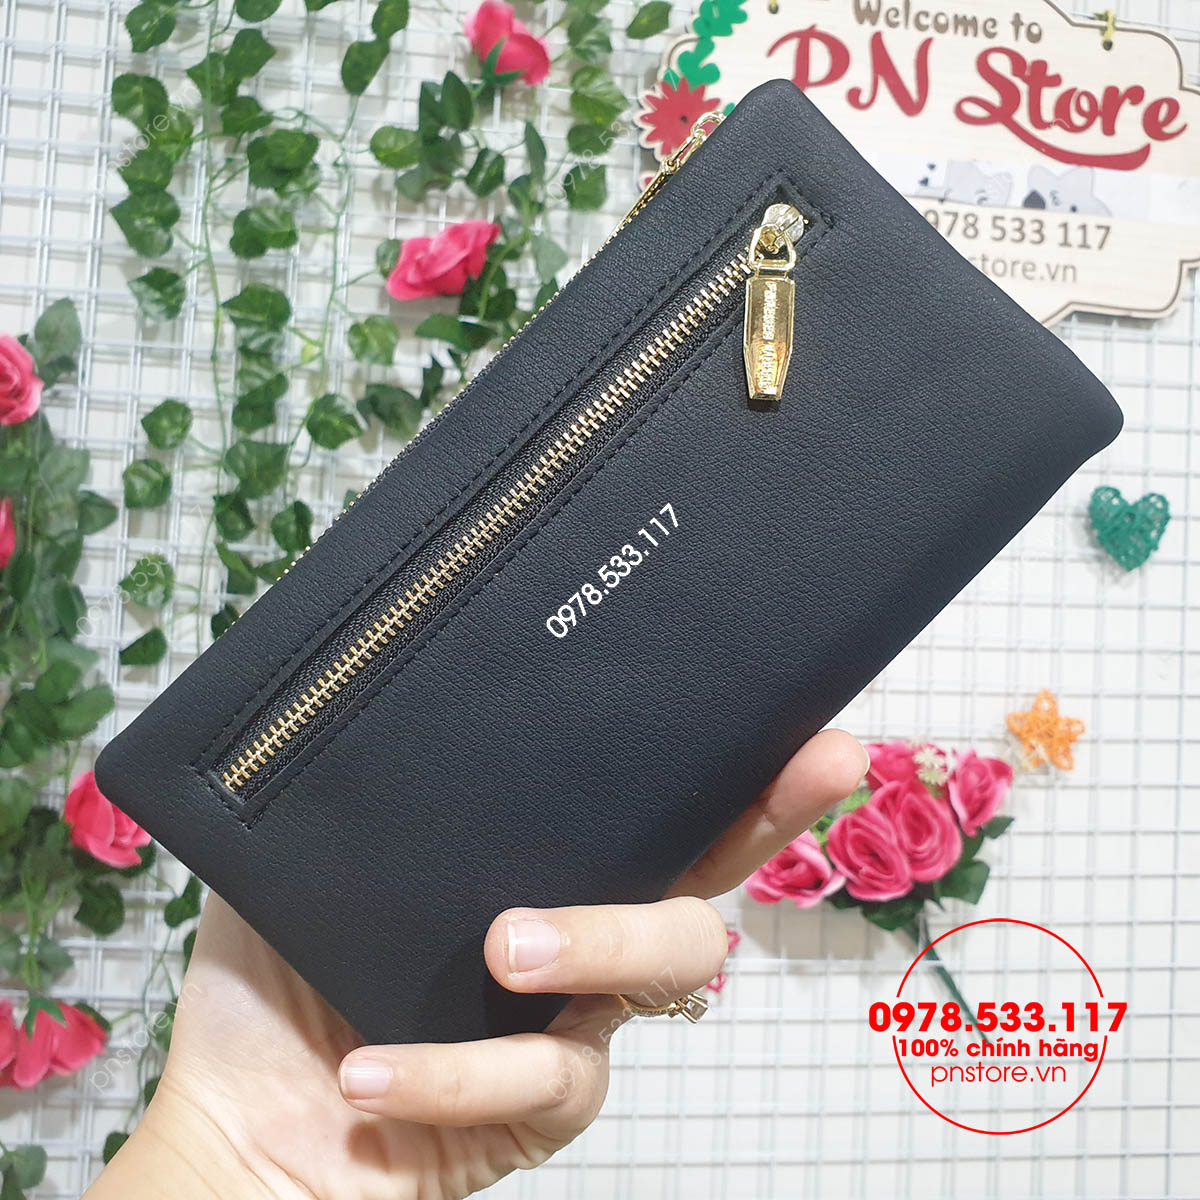 Bóp ví cầm tay nữ - PN70525